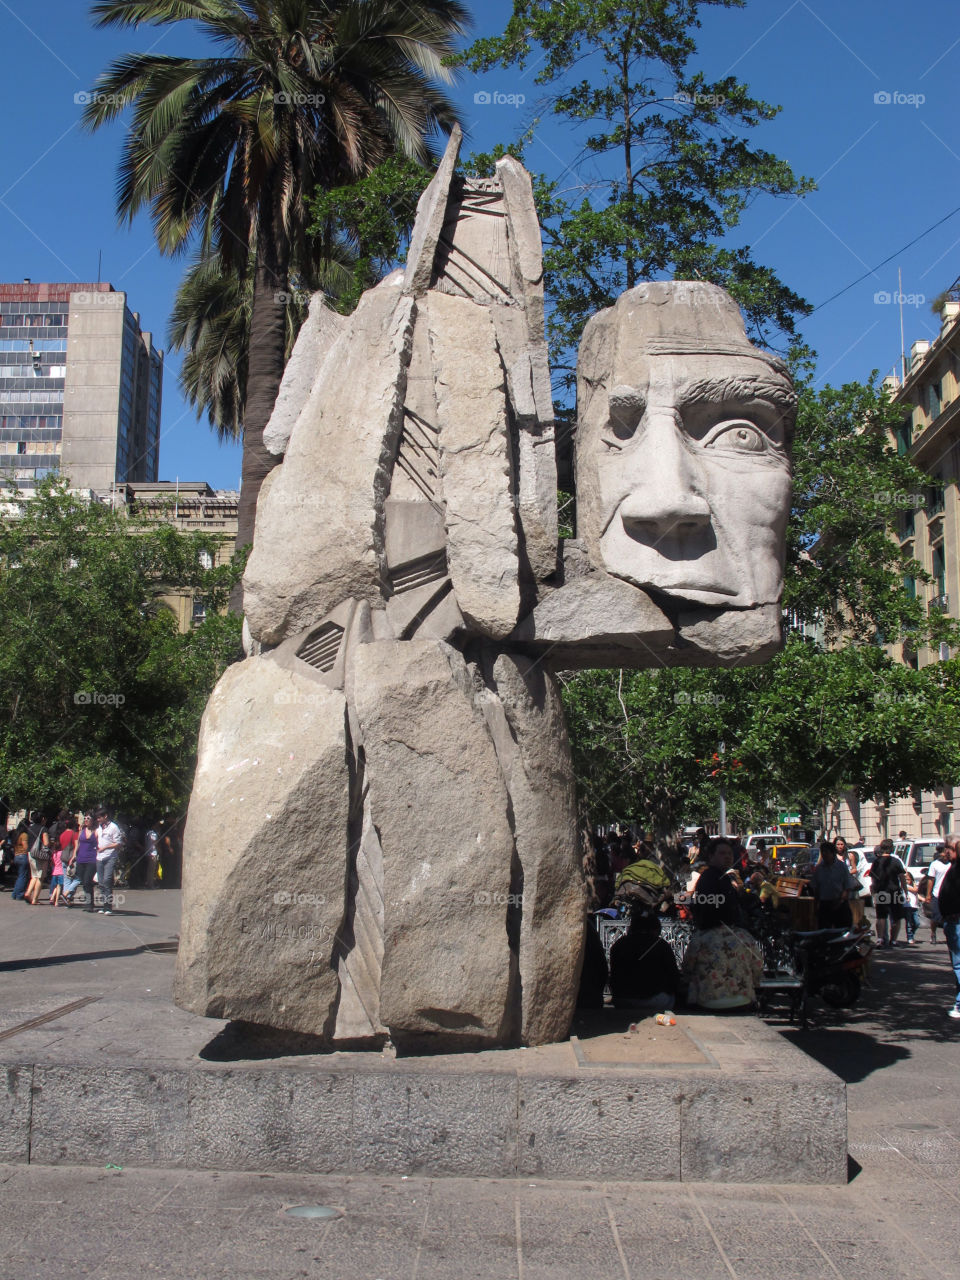 sculpture santiago plaza de armas santiago chile by jpt4u